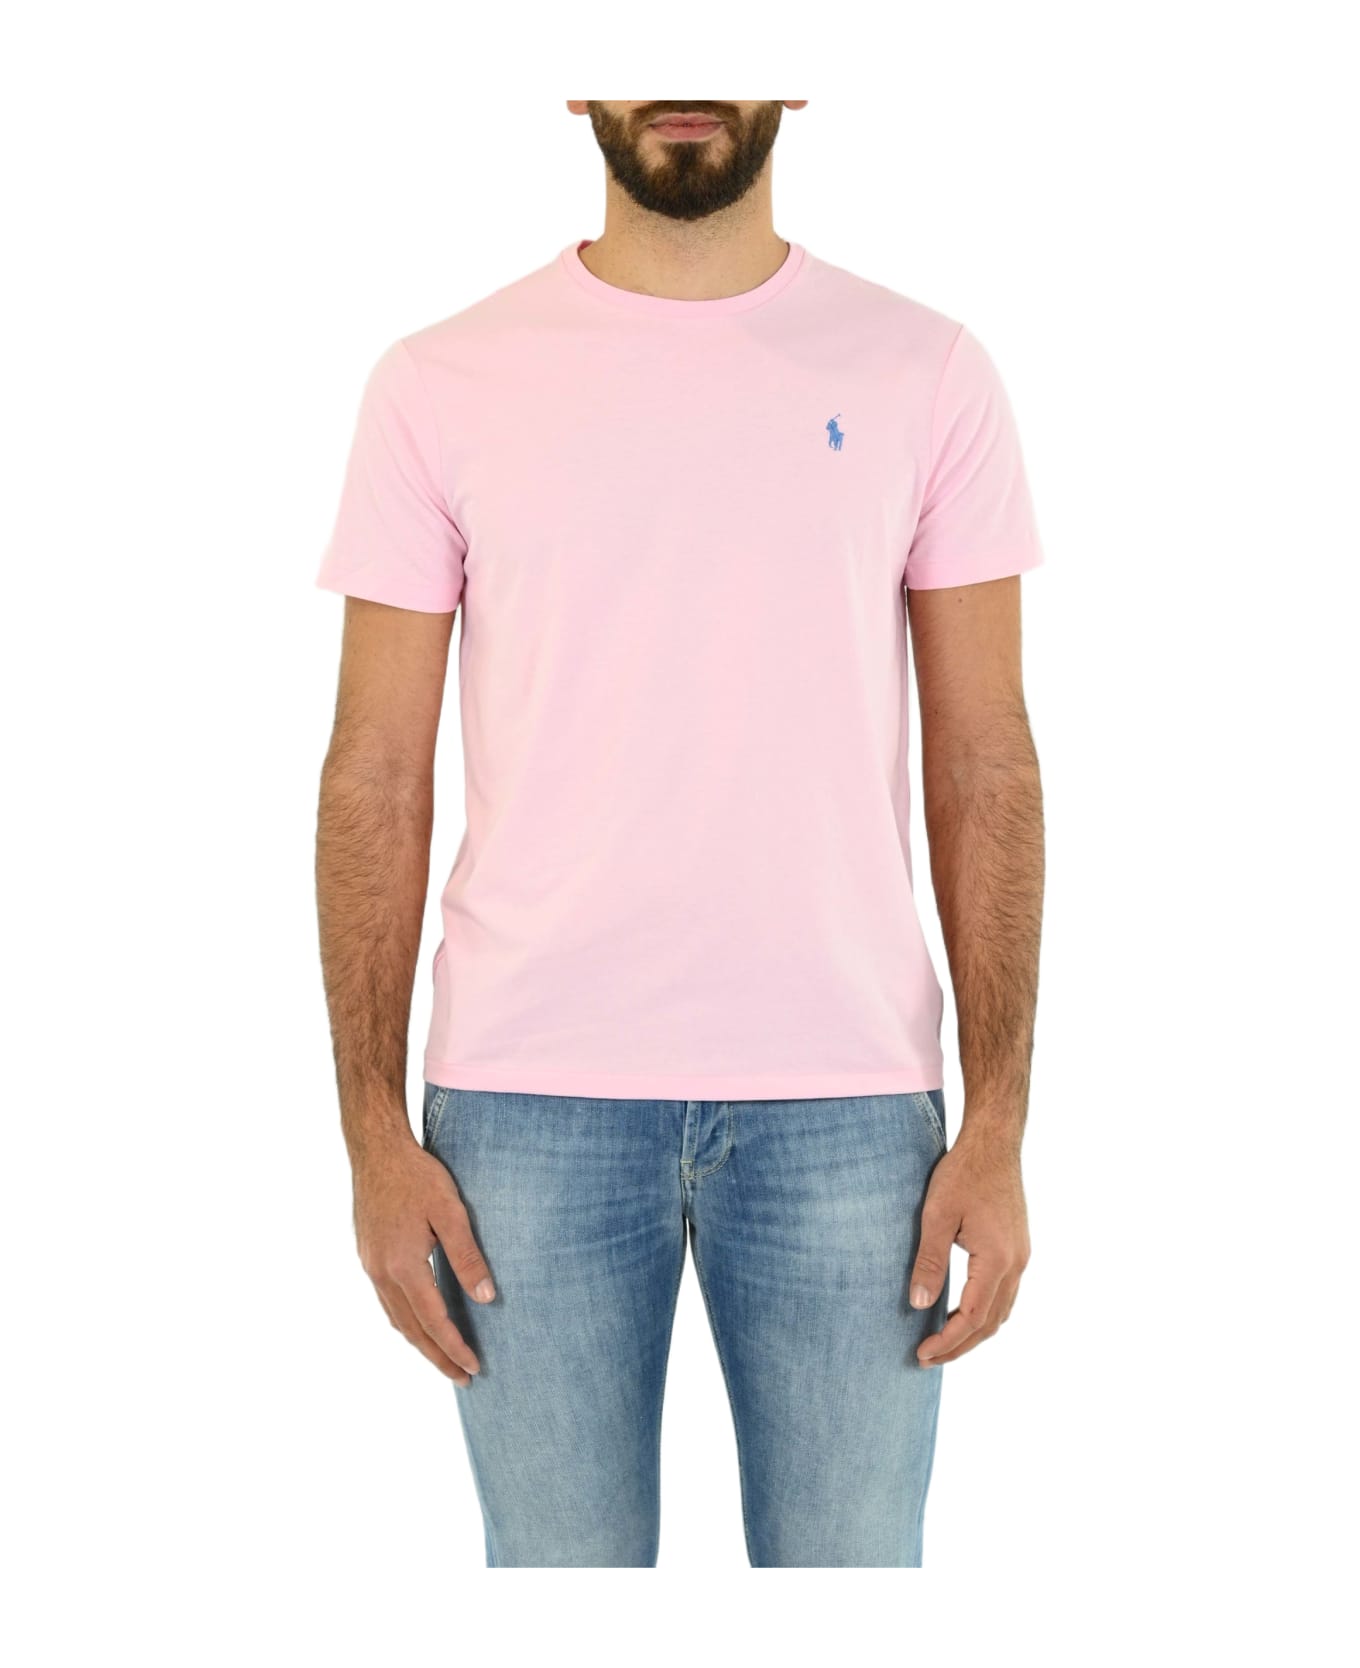 Ralph Lauren Round Neck T-shirt - Pink シャツ